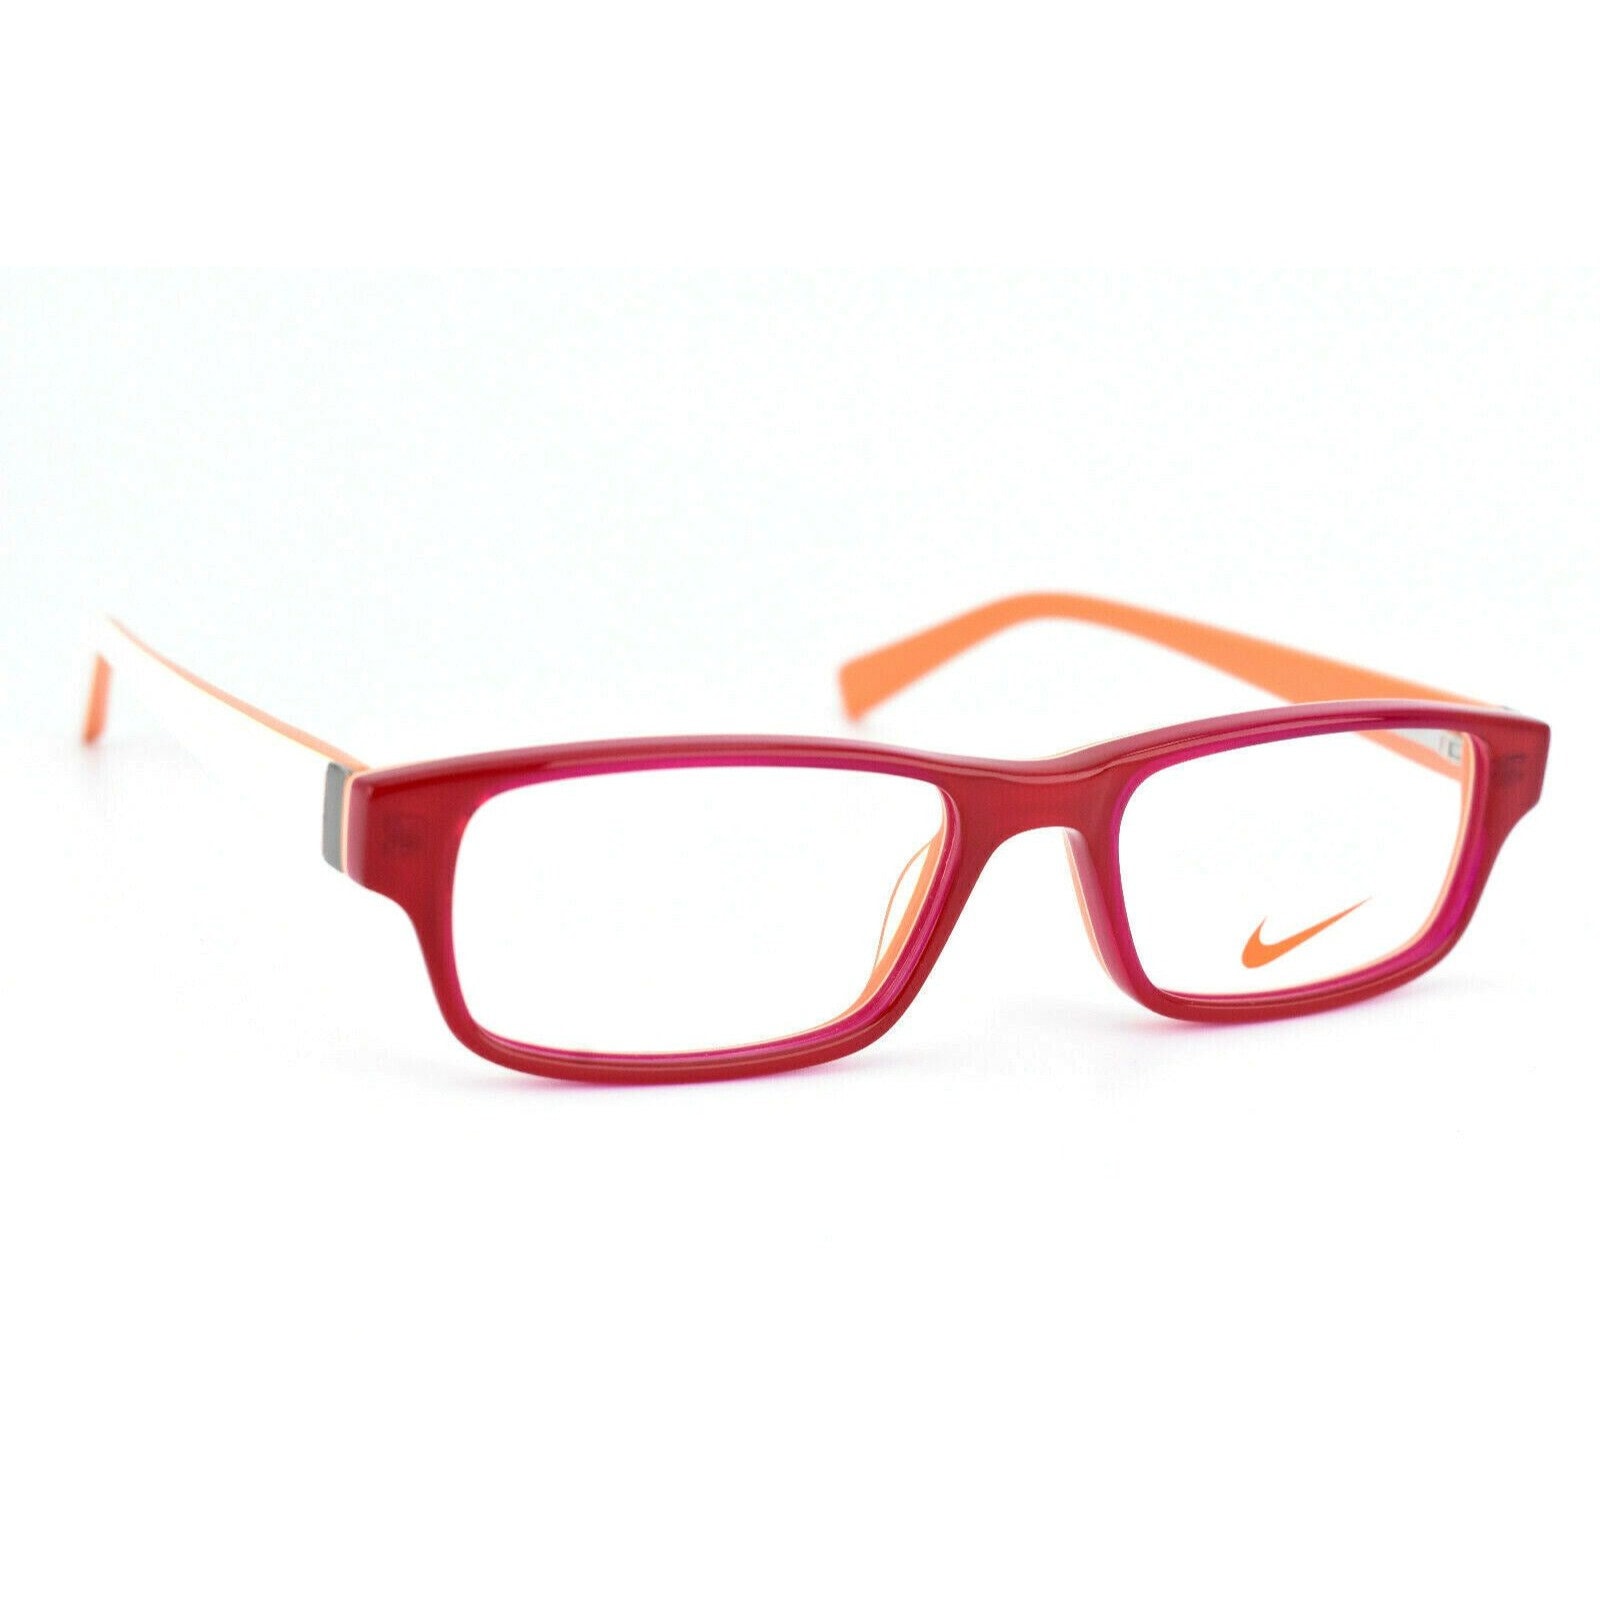 Onza Paleto Arado Nike Eyeglasses Kids Full Frame 5528 605 Red Orange Boys Girls - Etsy